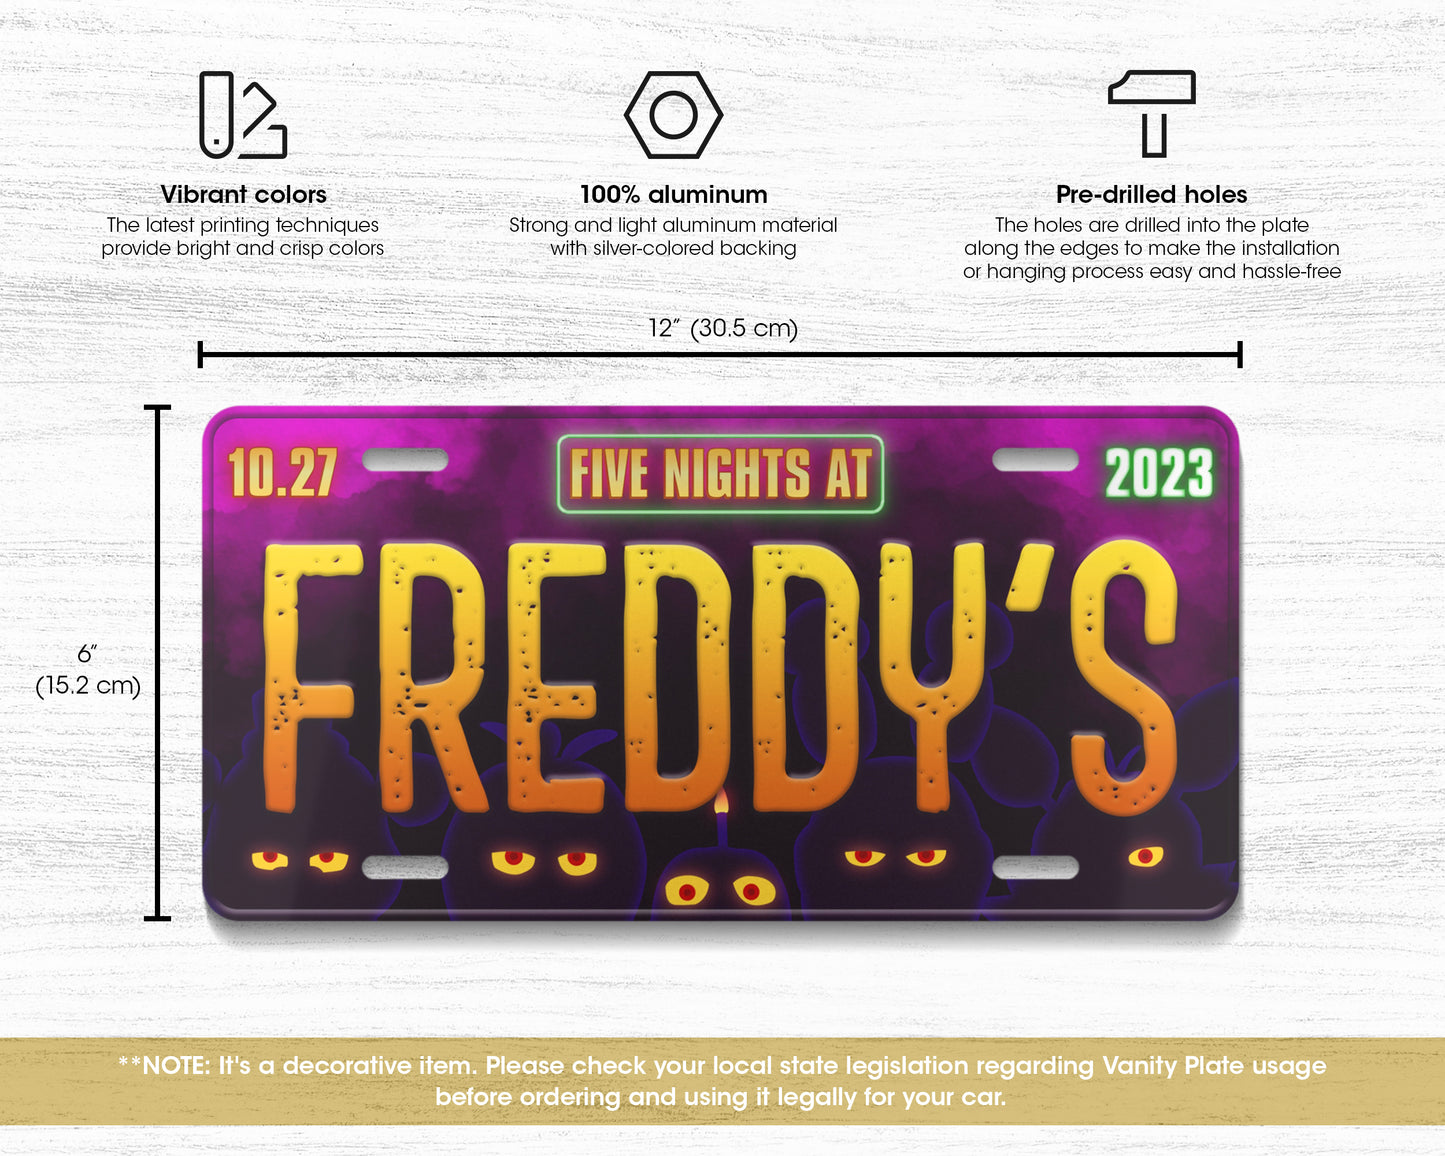 Freddy's (2023) movie license plate